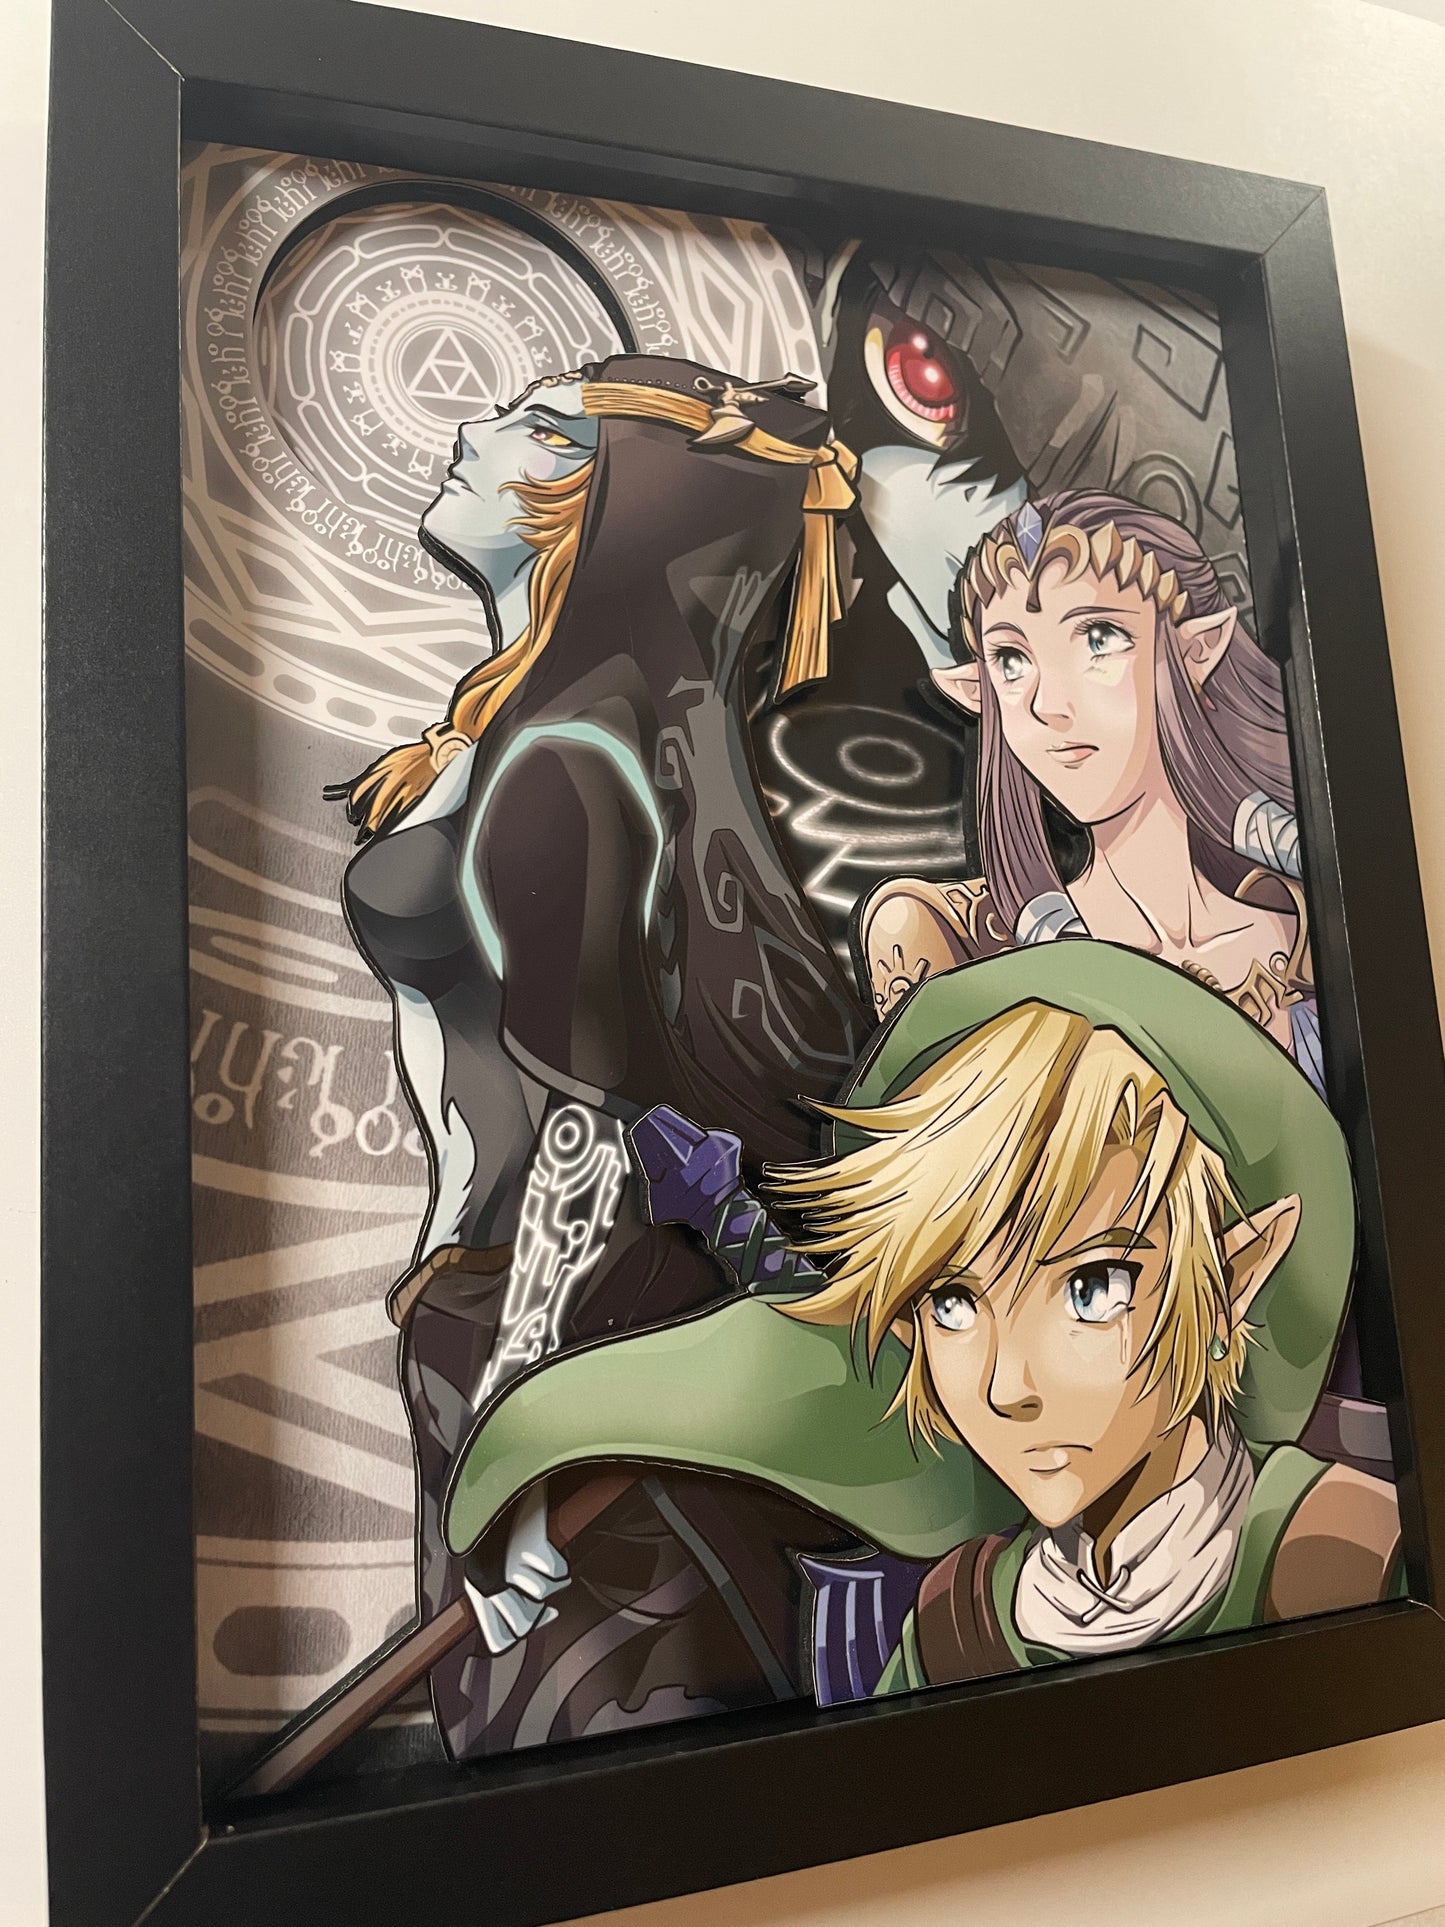 Legend of Zelda - Twilight Princess - Midna Departure - 8x10" Shadow Box!